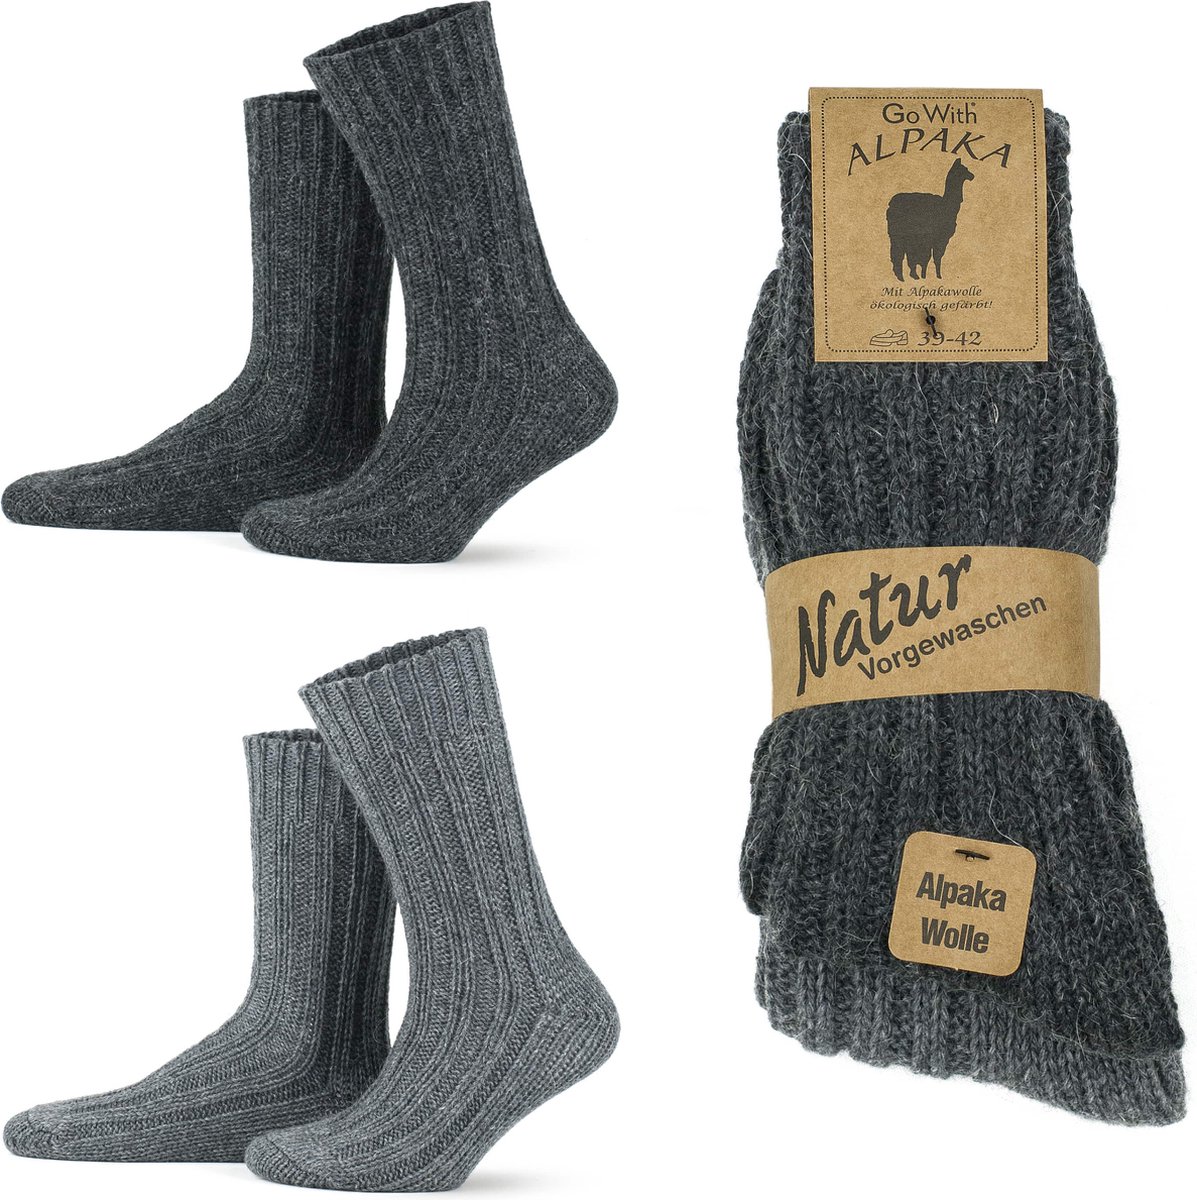 GoWith-4 paar-alpaca wollen sokken-extra dikke sokken-huissokken-warme sokken-wintersokken-thermosokken-cadeau sokken-grijs-antraciet-maat 35-38